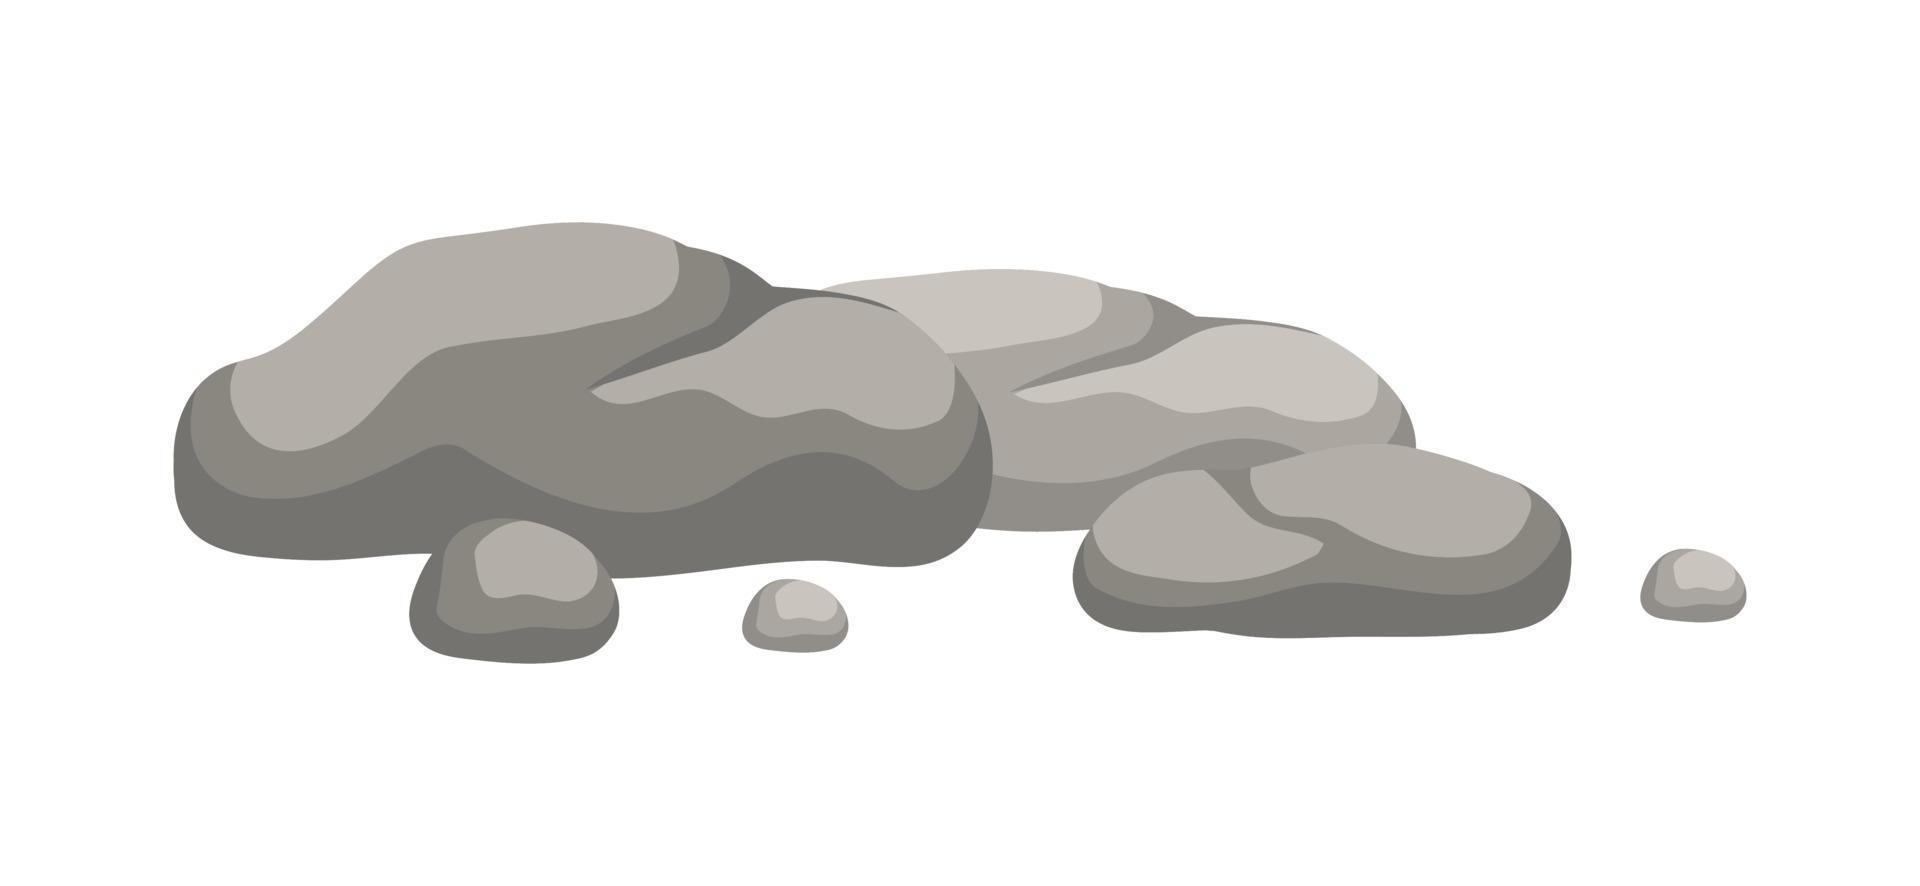 Roche pierre rocher formation dessin animé vecteur illustration.